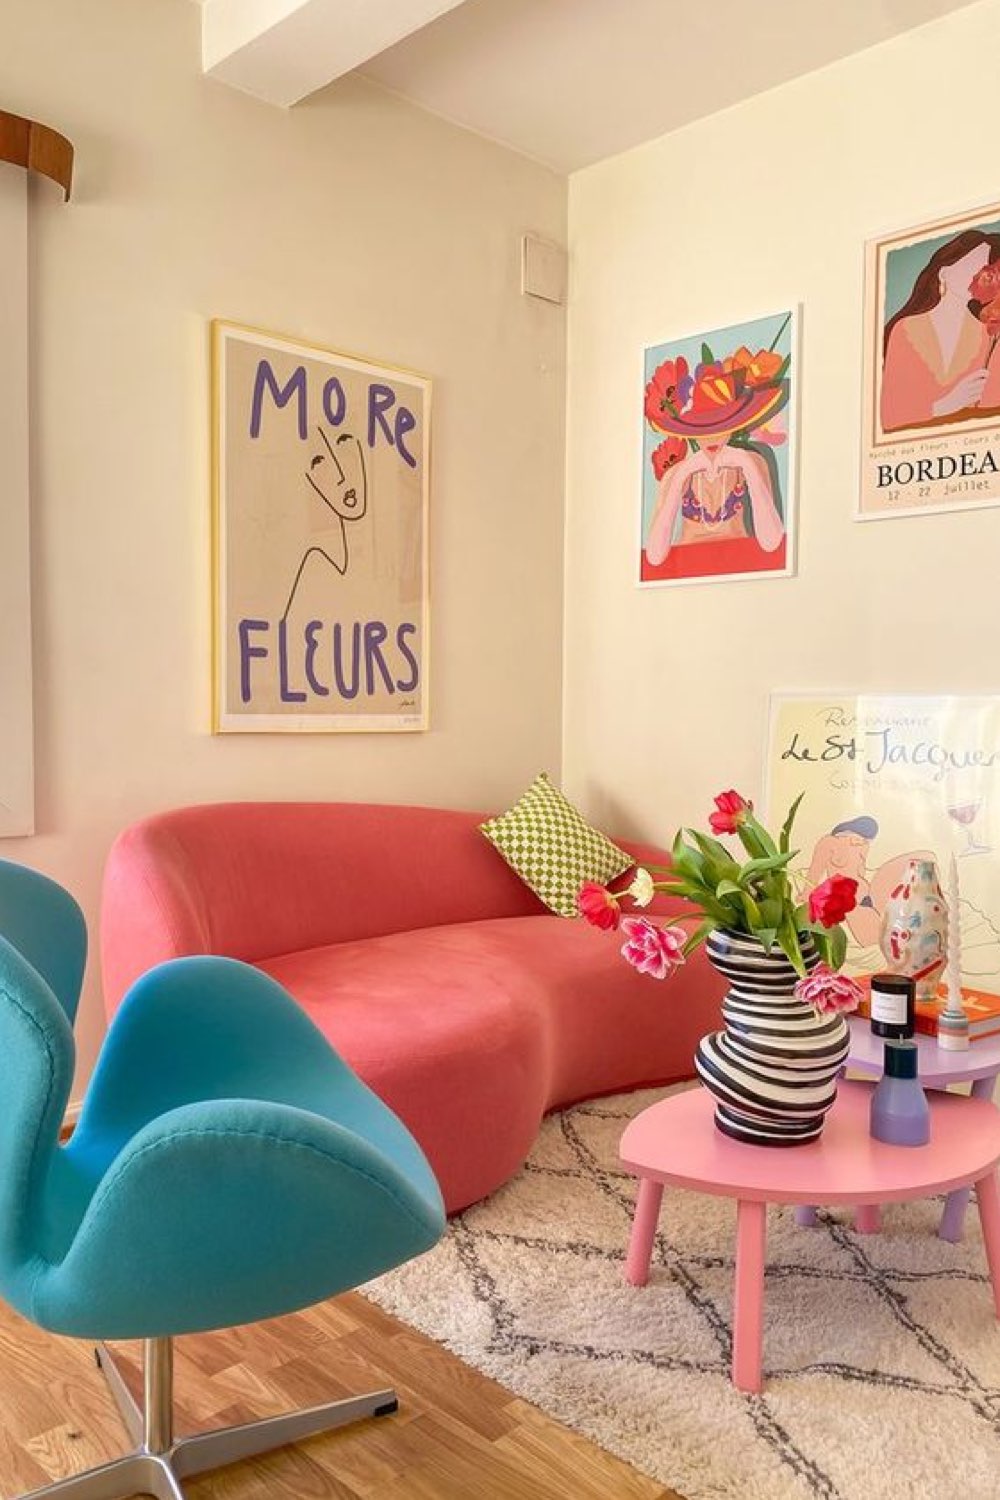 mettre de la couleur dans son salon canapé rose arrondi design fauteuil bleu pop pastel